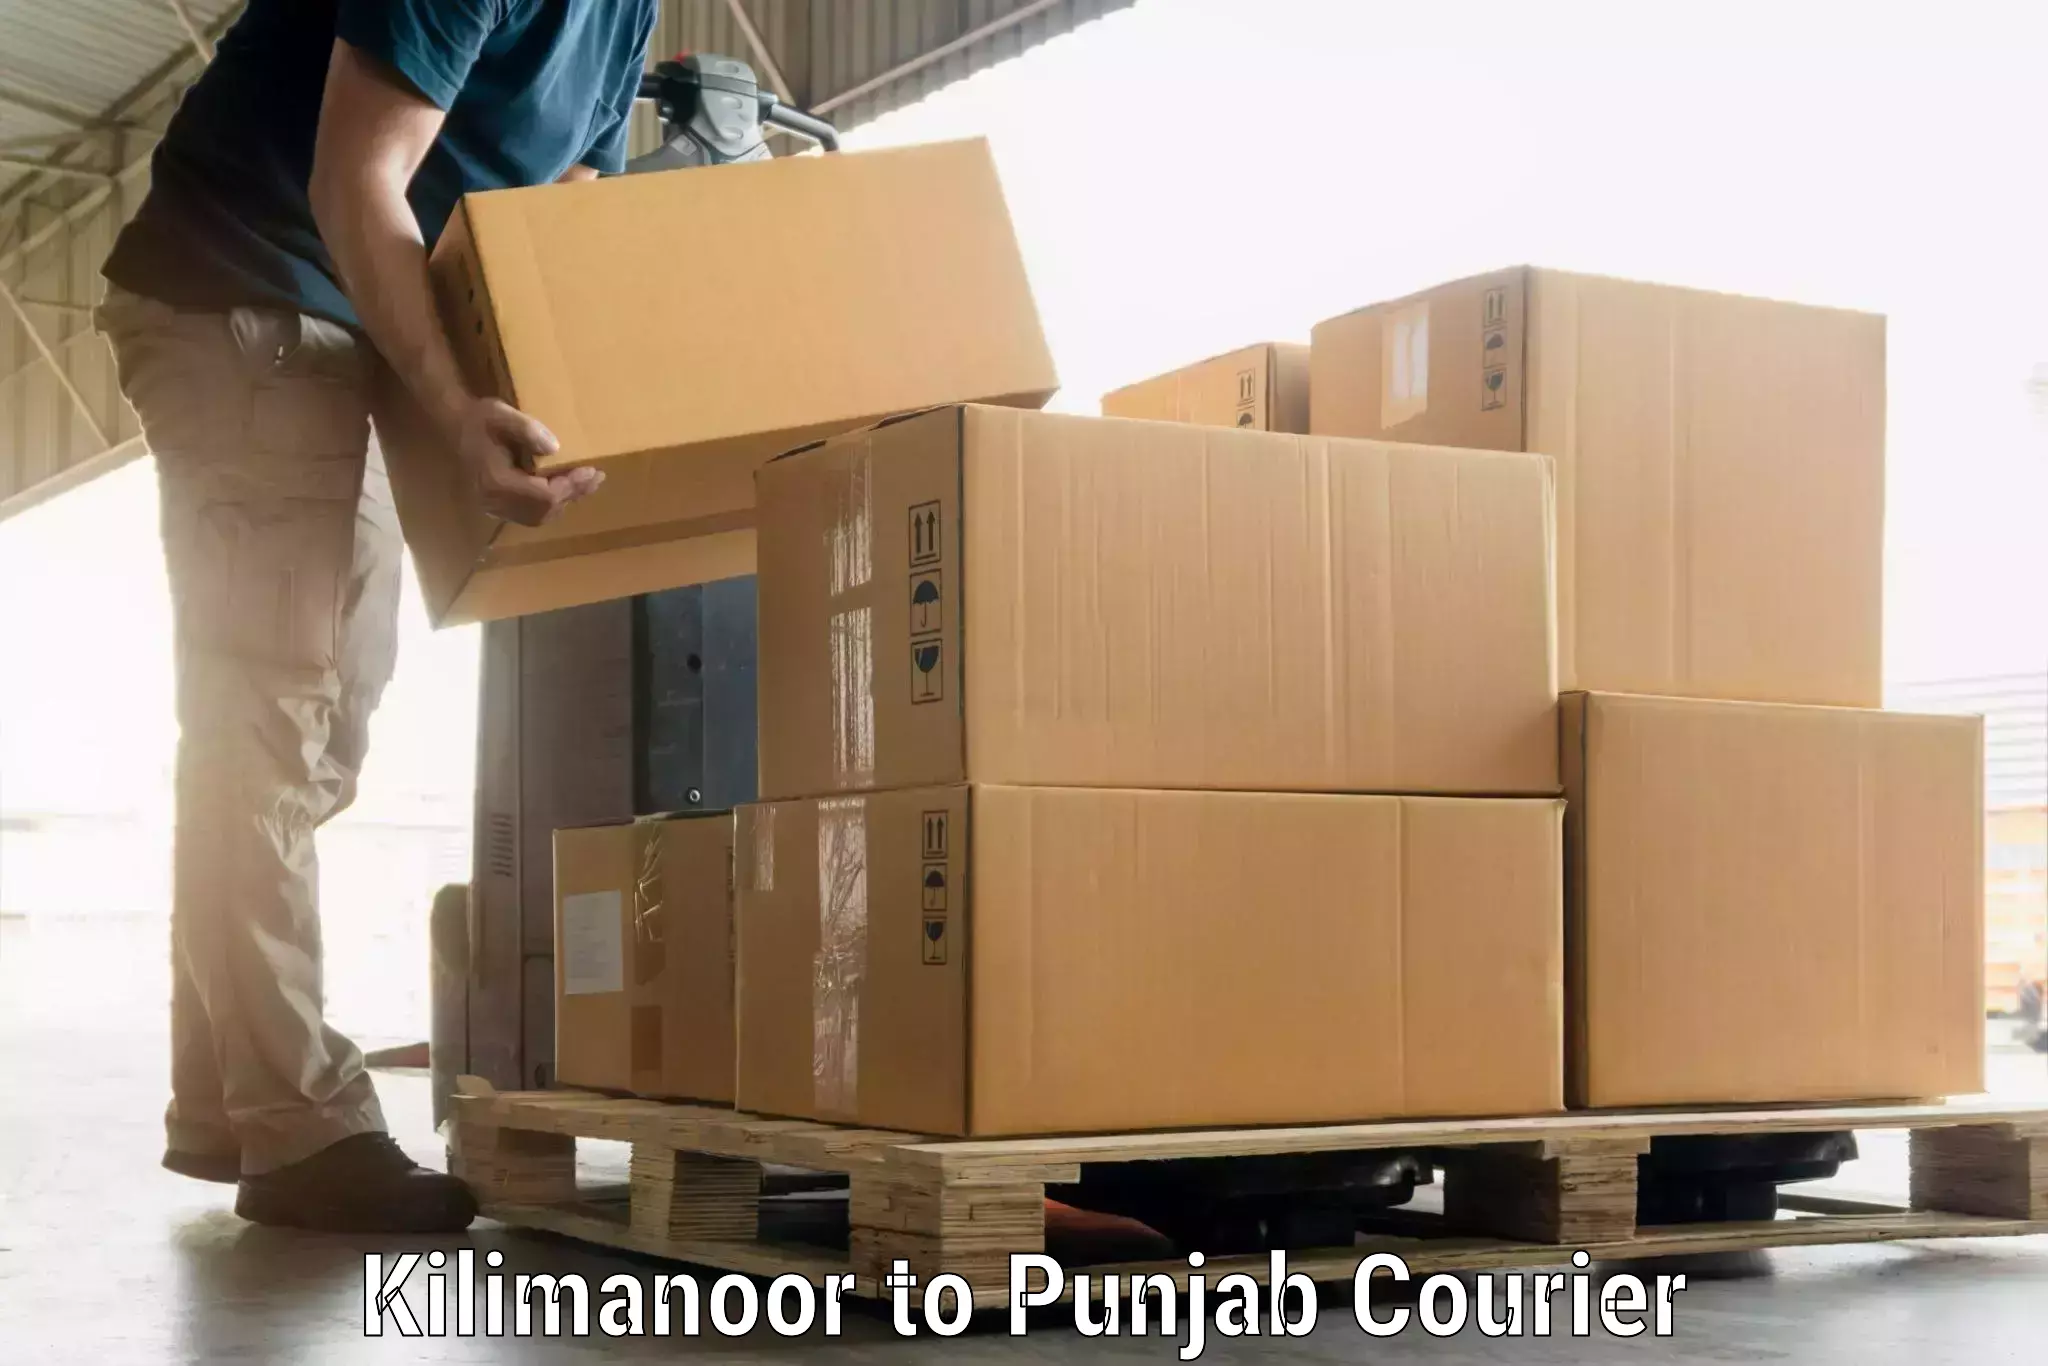 Door-to-door baggage service Kilimanoor to Punjab